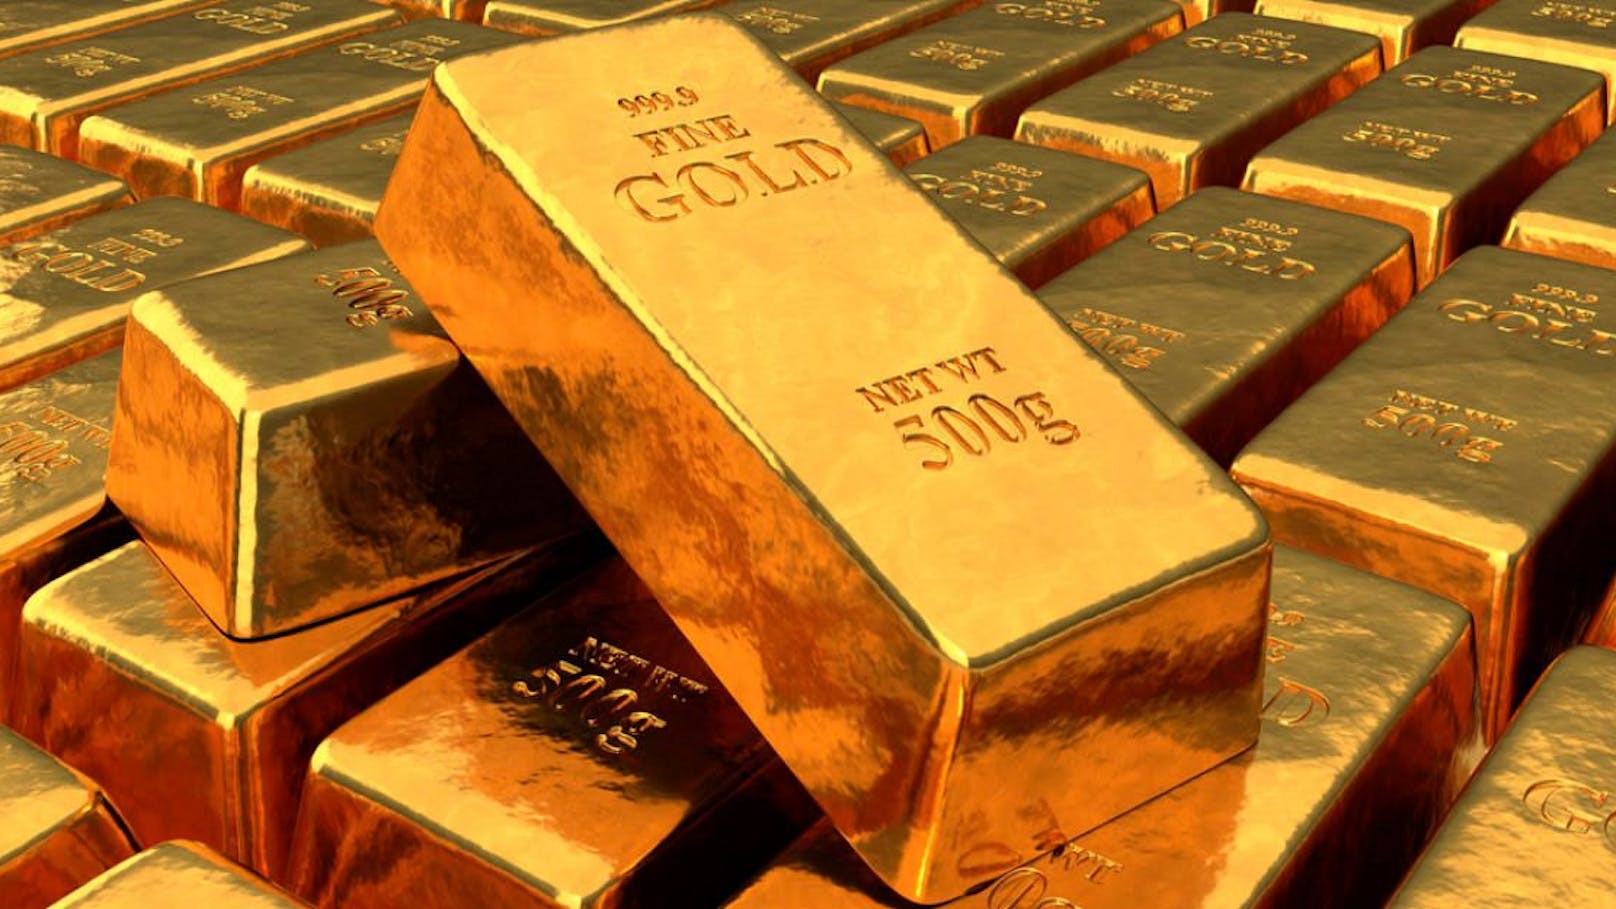 20 Kilo Gold von mutmaßlichem Betrüger beschlagnahmt